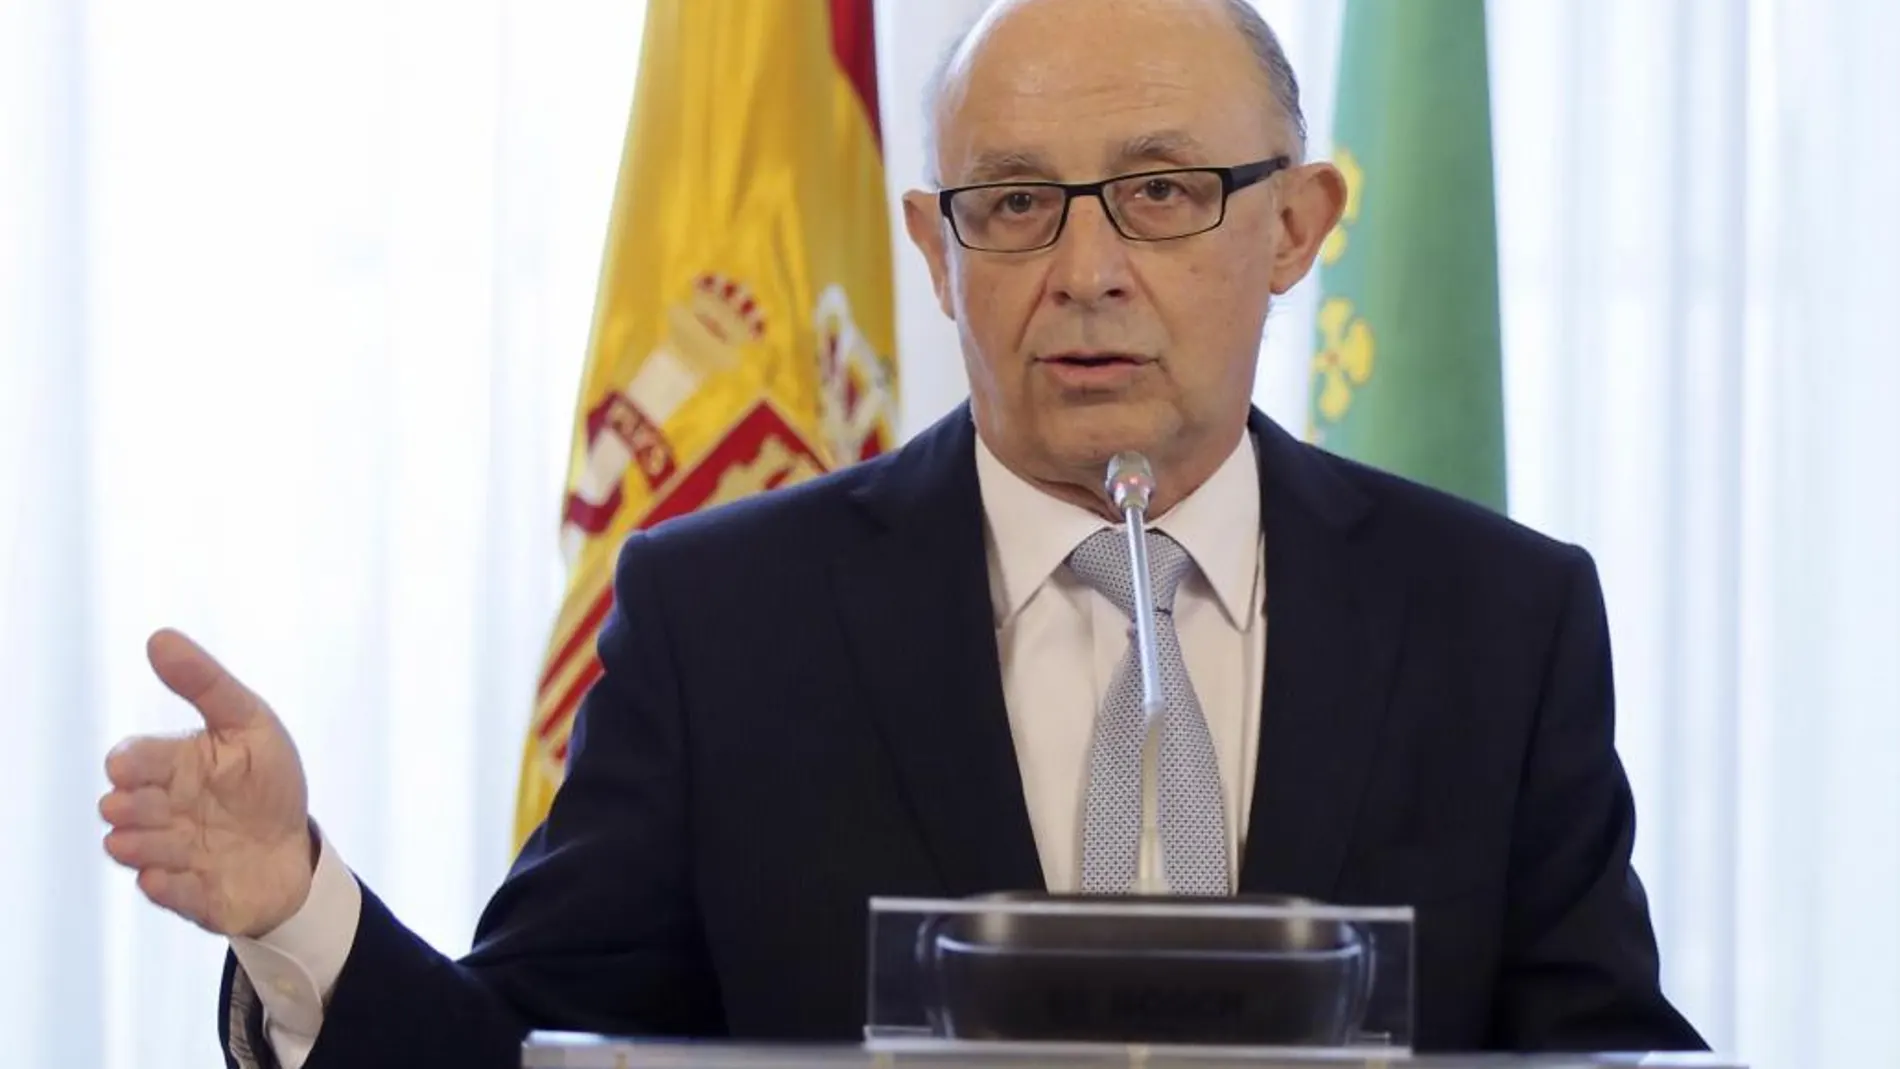 El ministro de Hacienda y Administraciones Públicas, Cristóbal Montoro,tras la firma de un protocolo entre el Estado y Extremadura